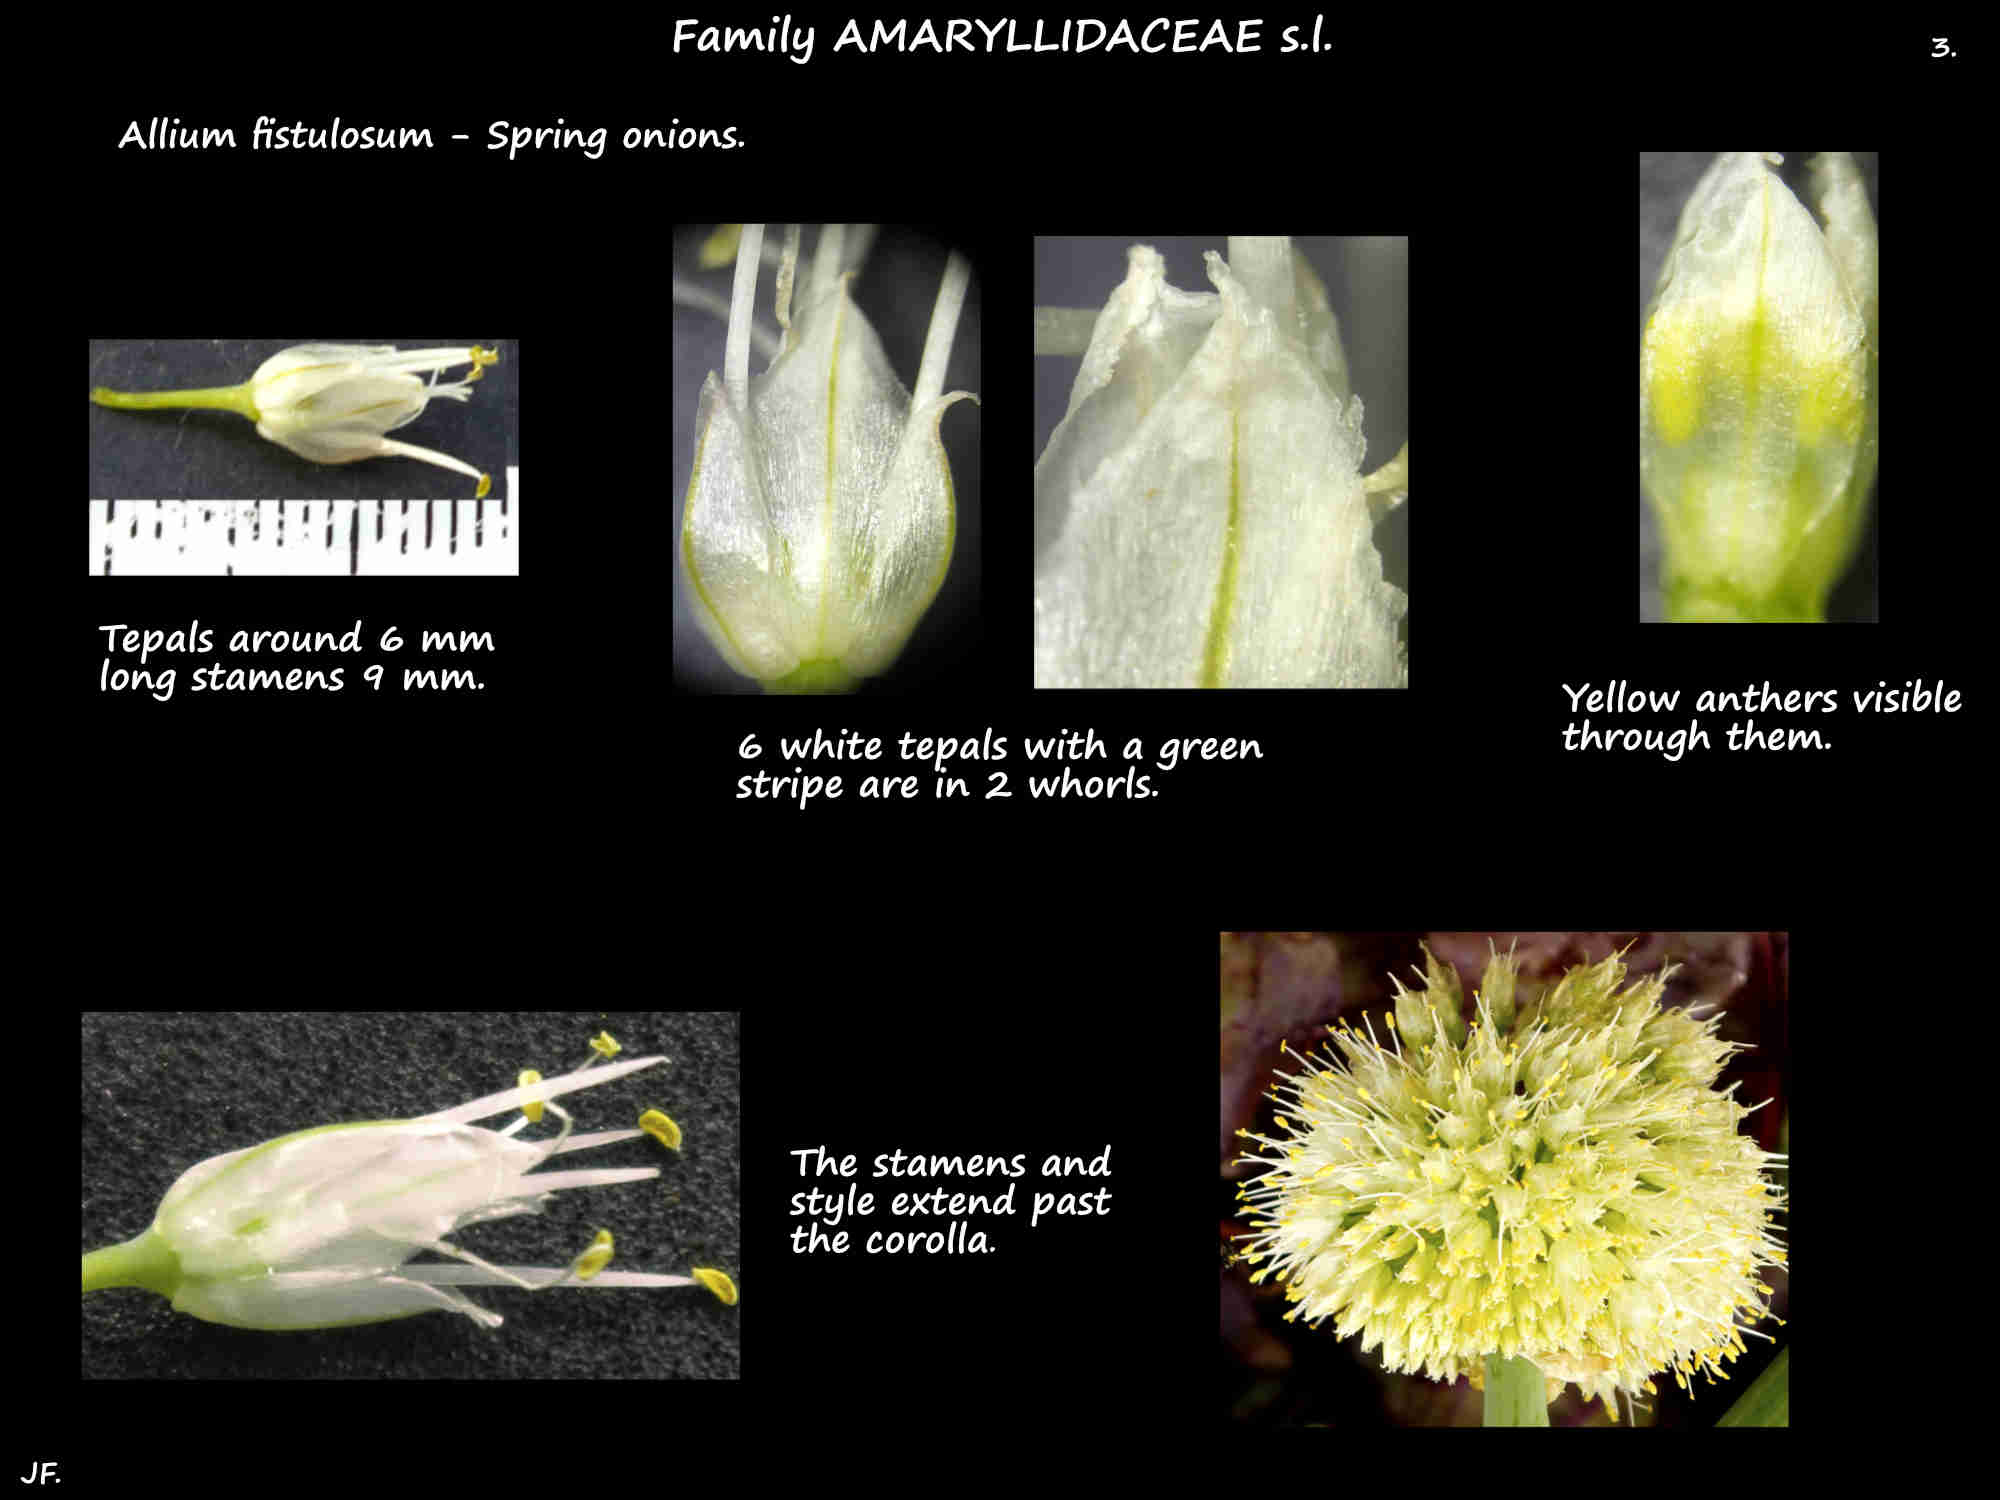 3 The 6 tepals in Allium fistulosum flowers